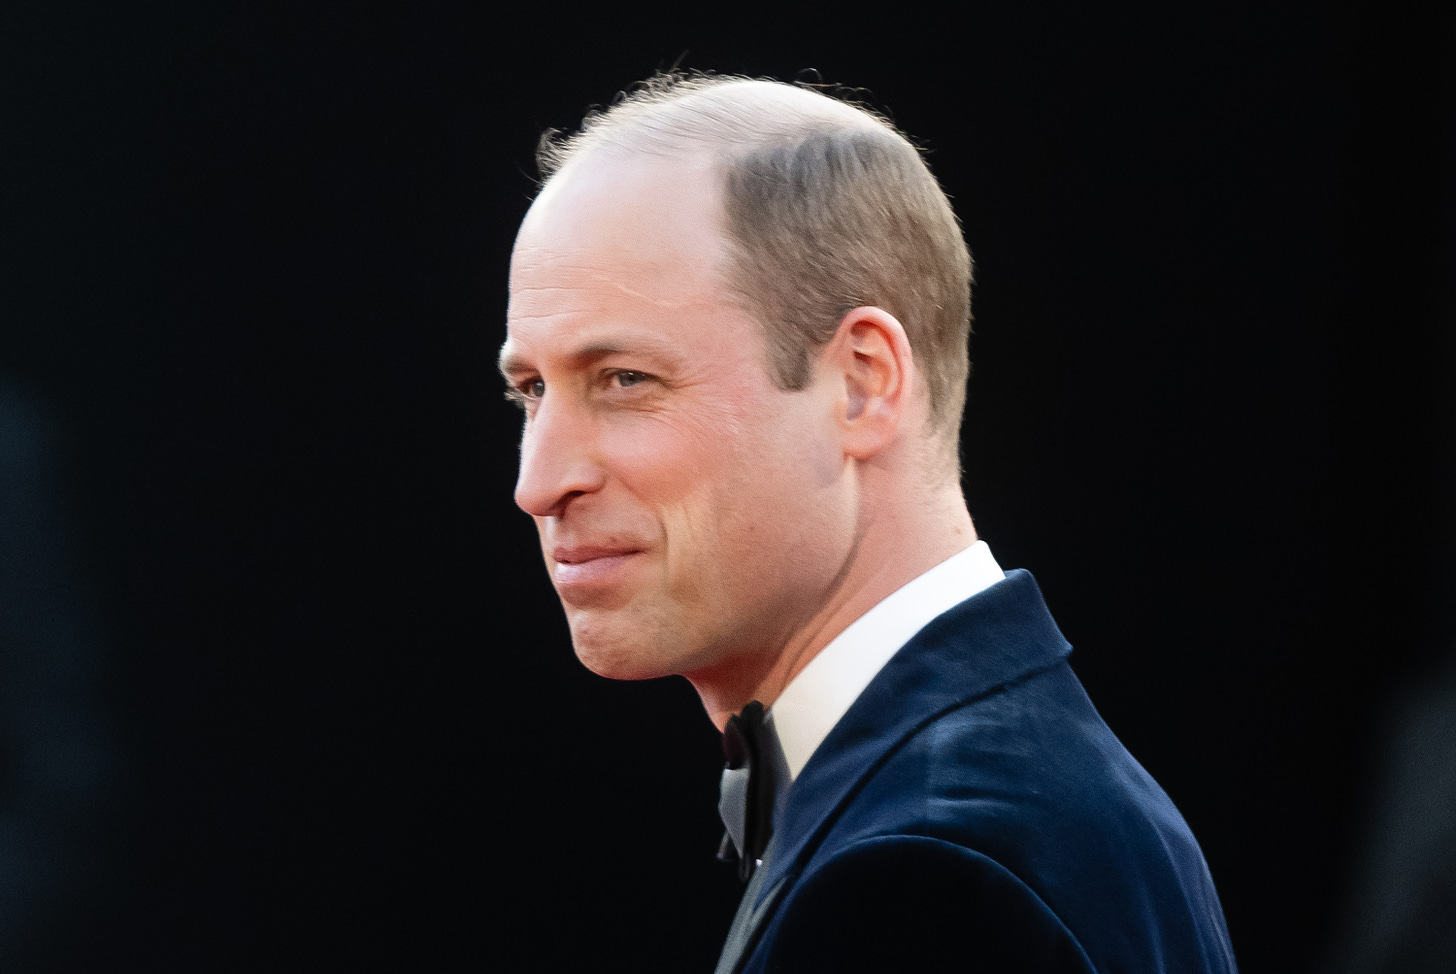 Smiling Prince William in tuxedo